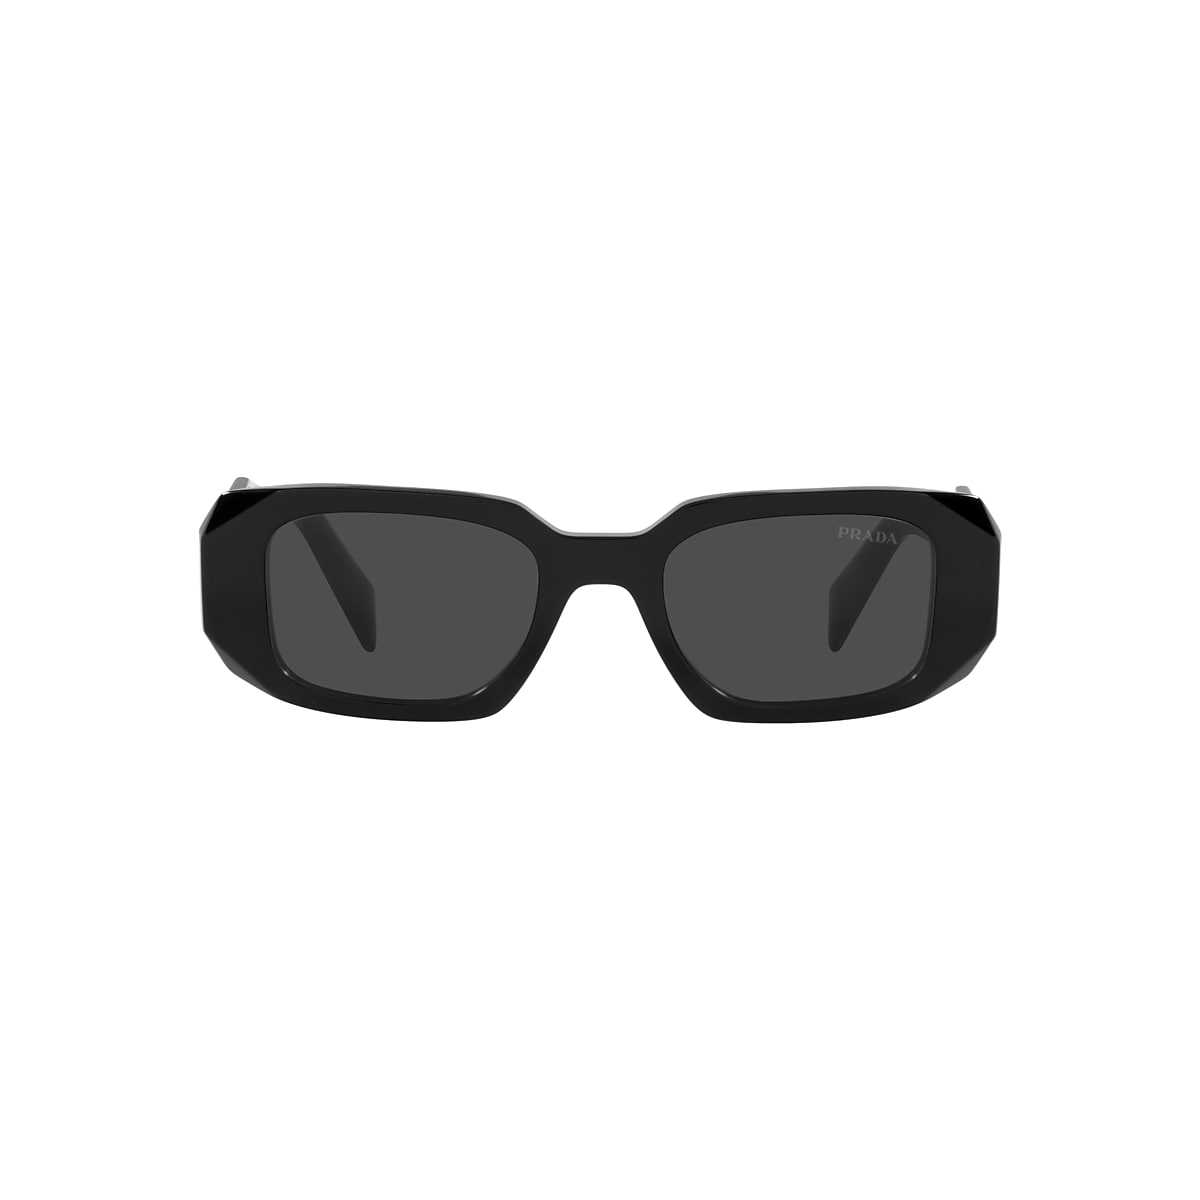 Prada 17WS 49 Dark Black Sunglasses Sunglass Hut USA